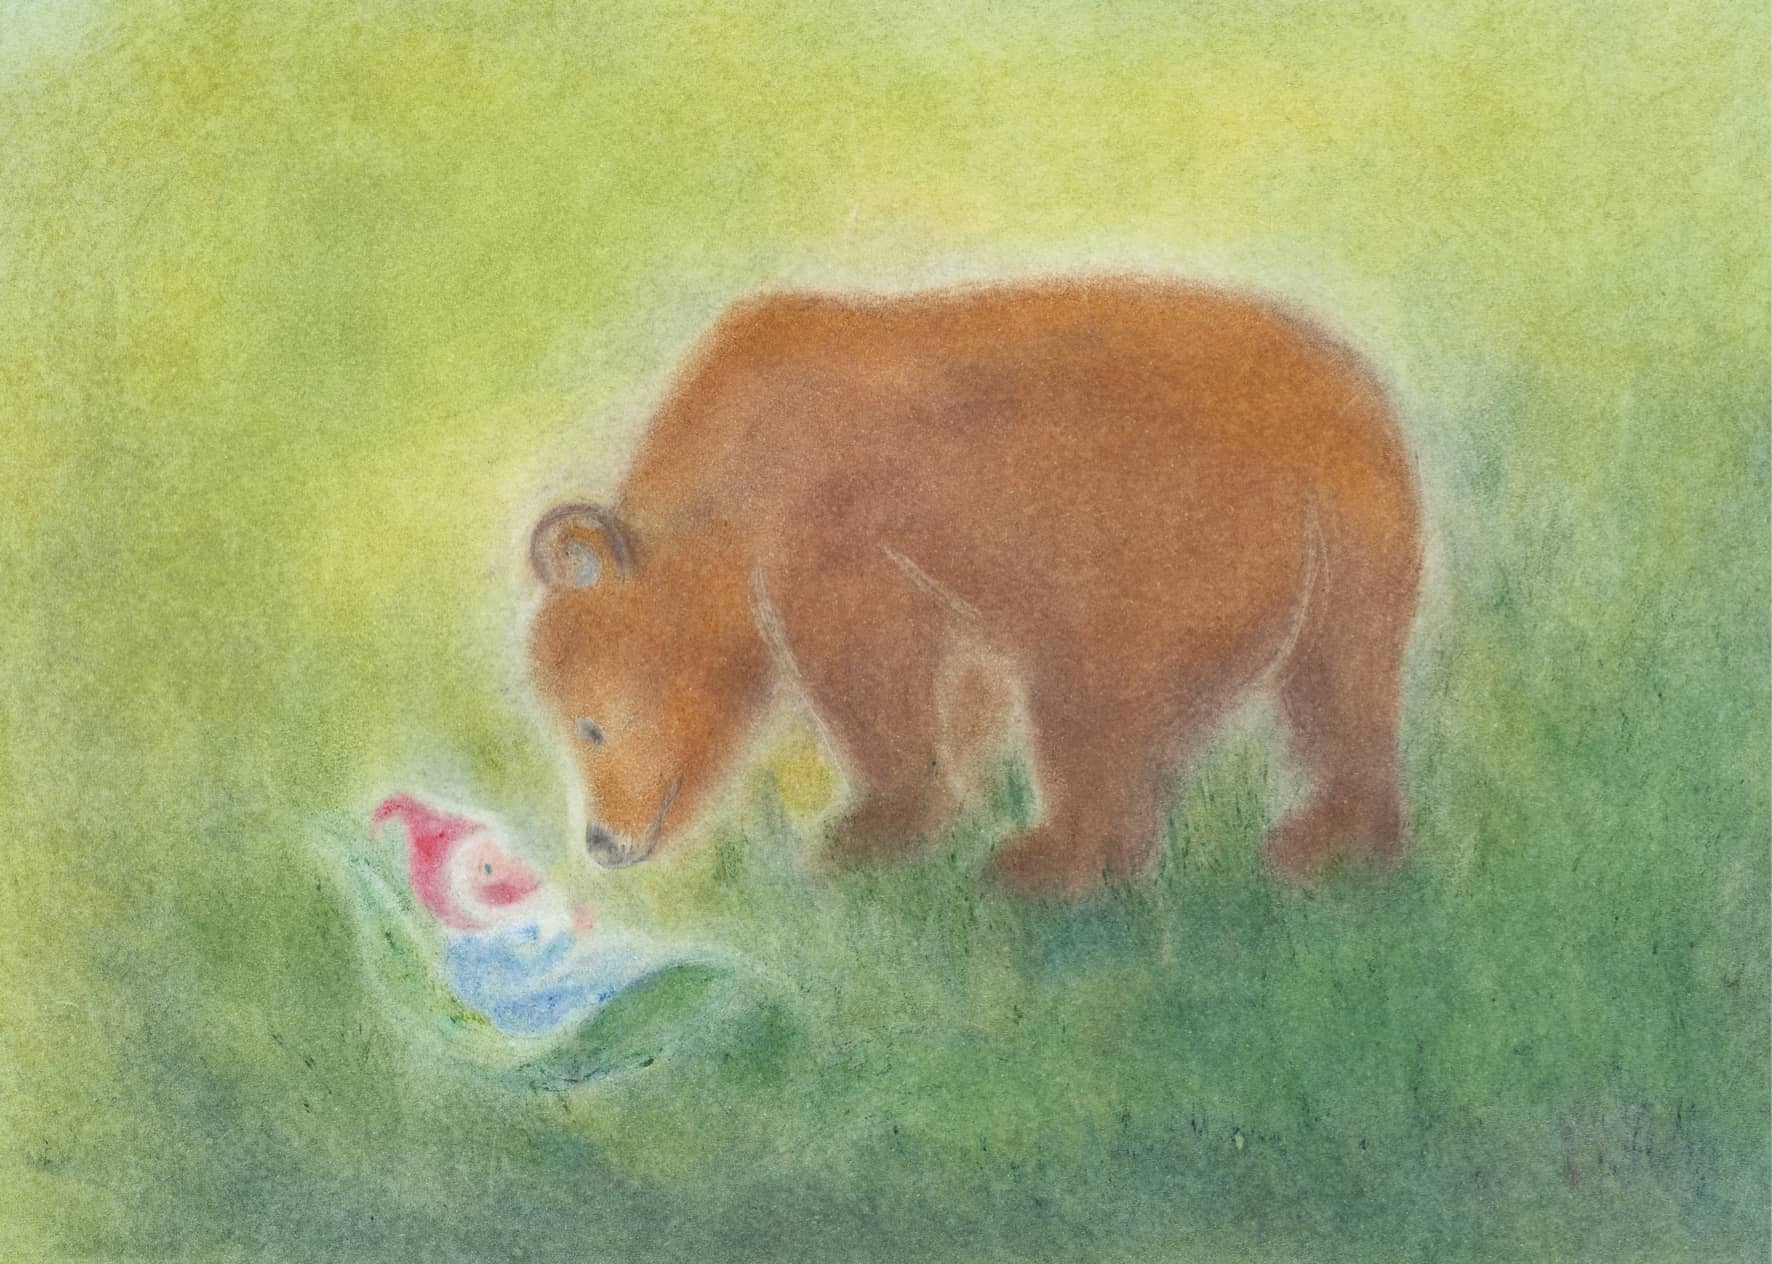 Seccorell Postkarte "Bärenliebe", mit zärtlichem Motiv und weichen Farbübergängen, ein Ausdruck von Fürsorge und Wärme.